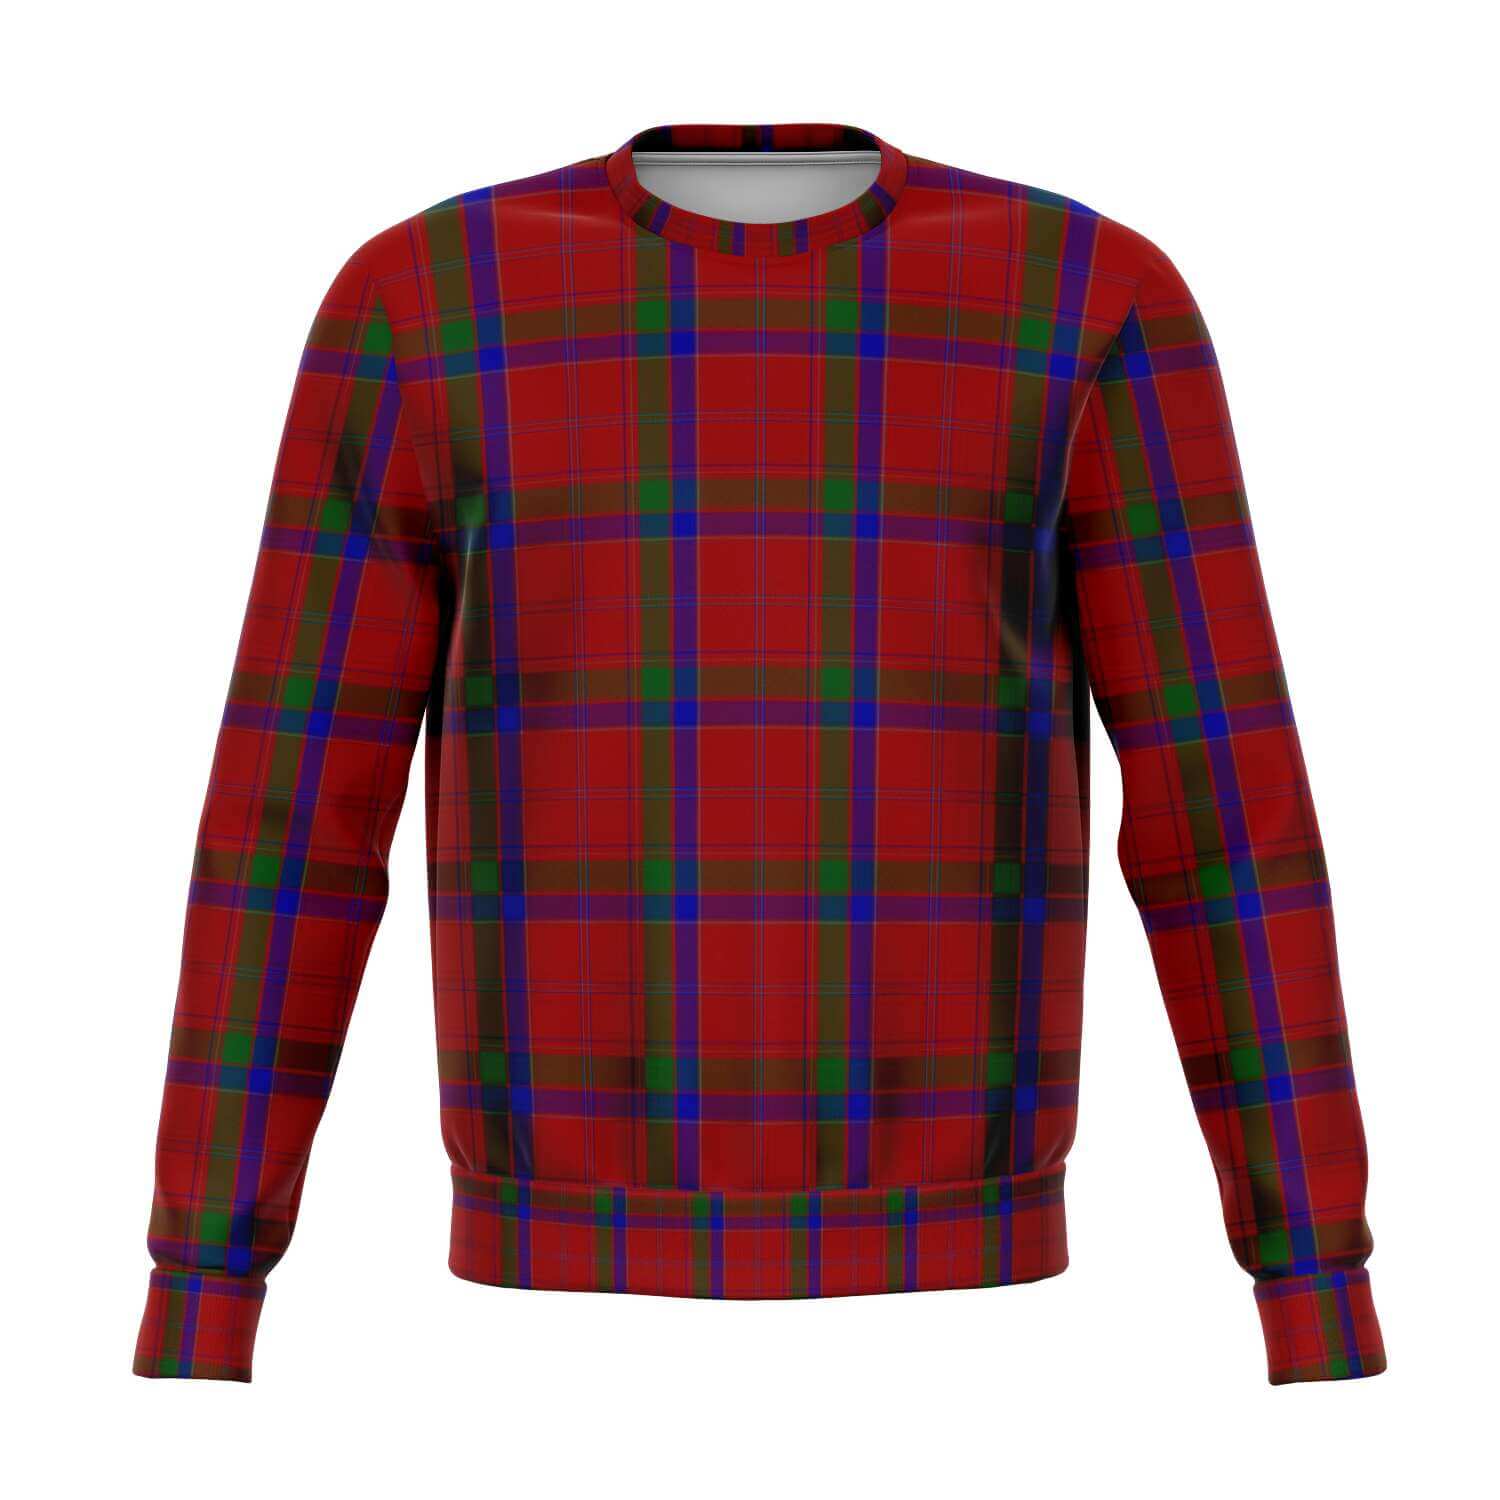 MacGillivray-Tartan-sweatshirt-front